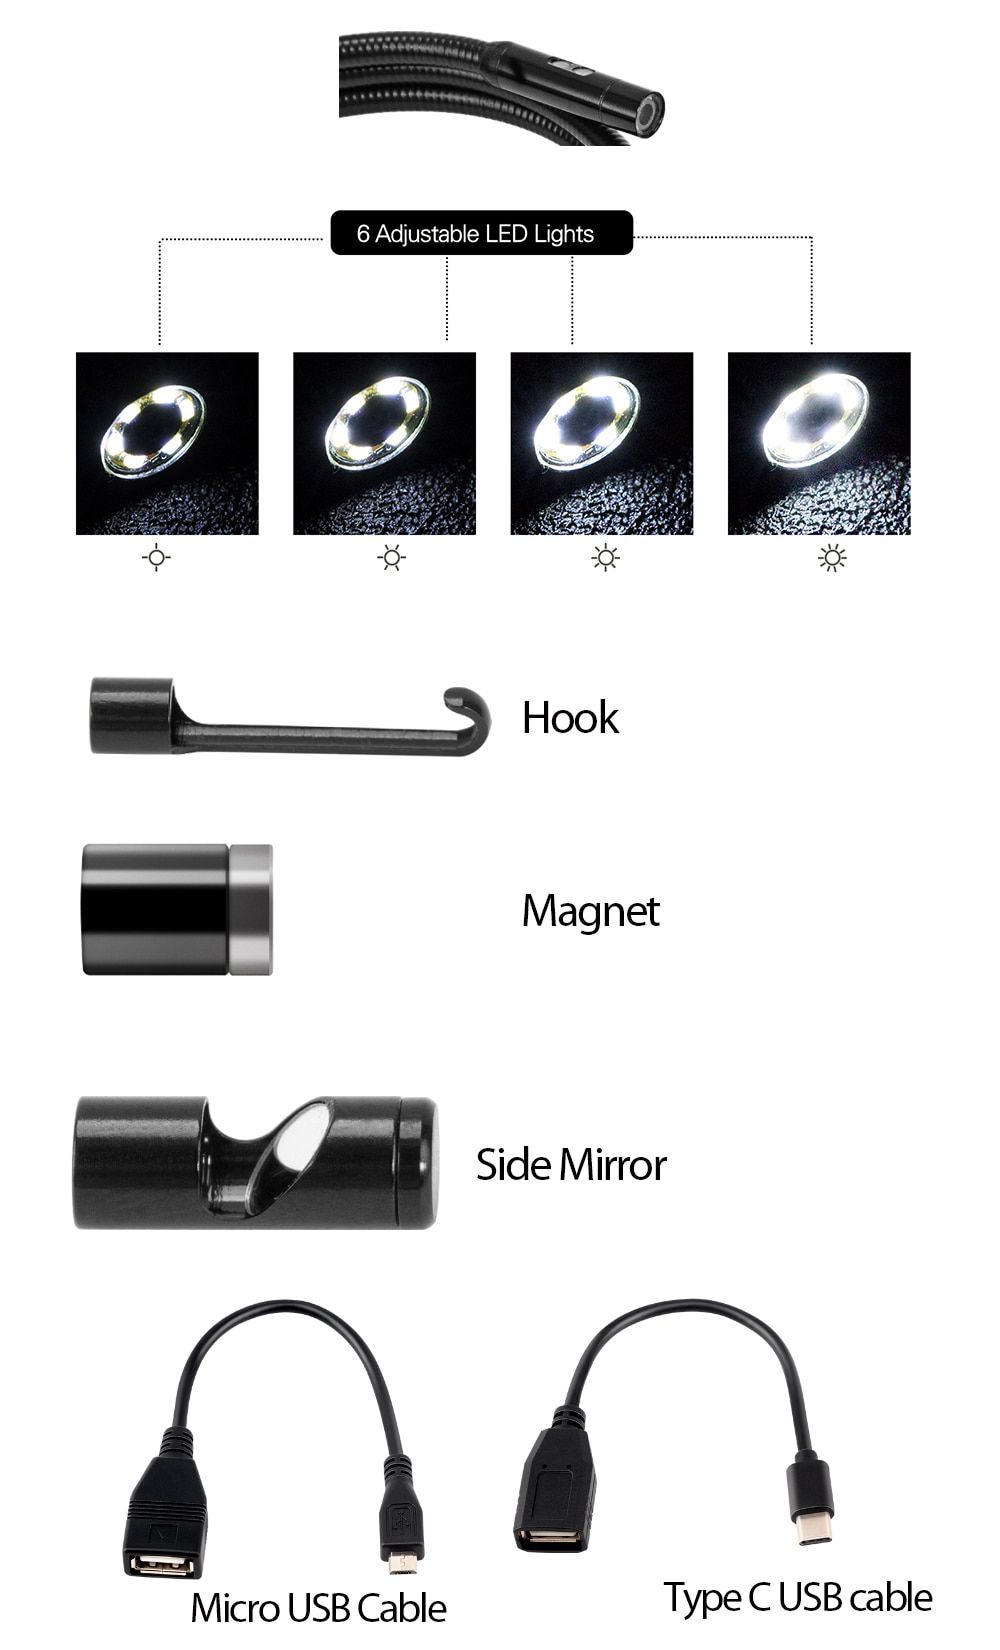 Introduction de l'oscilloscope vidéo de caméra x431 vsp600 HD IP67 2m câble 6 LED réglables mirco USB type - C endoscope inspection vidéo